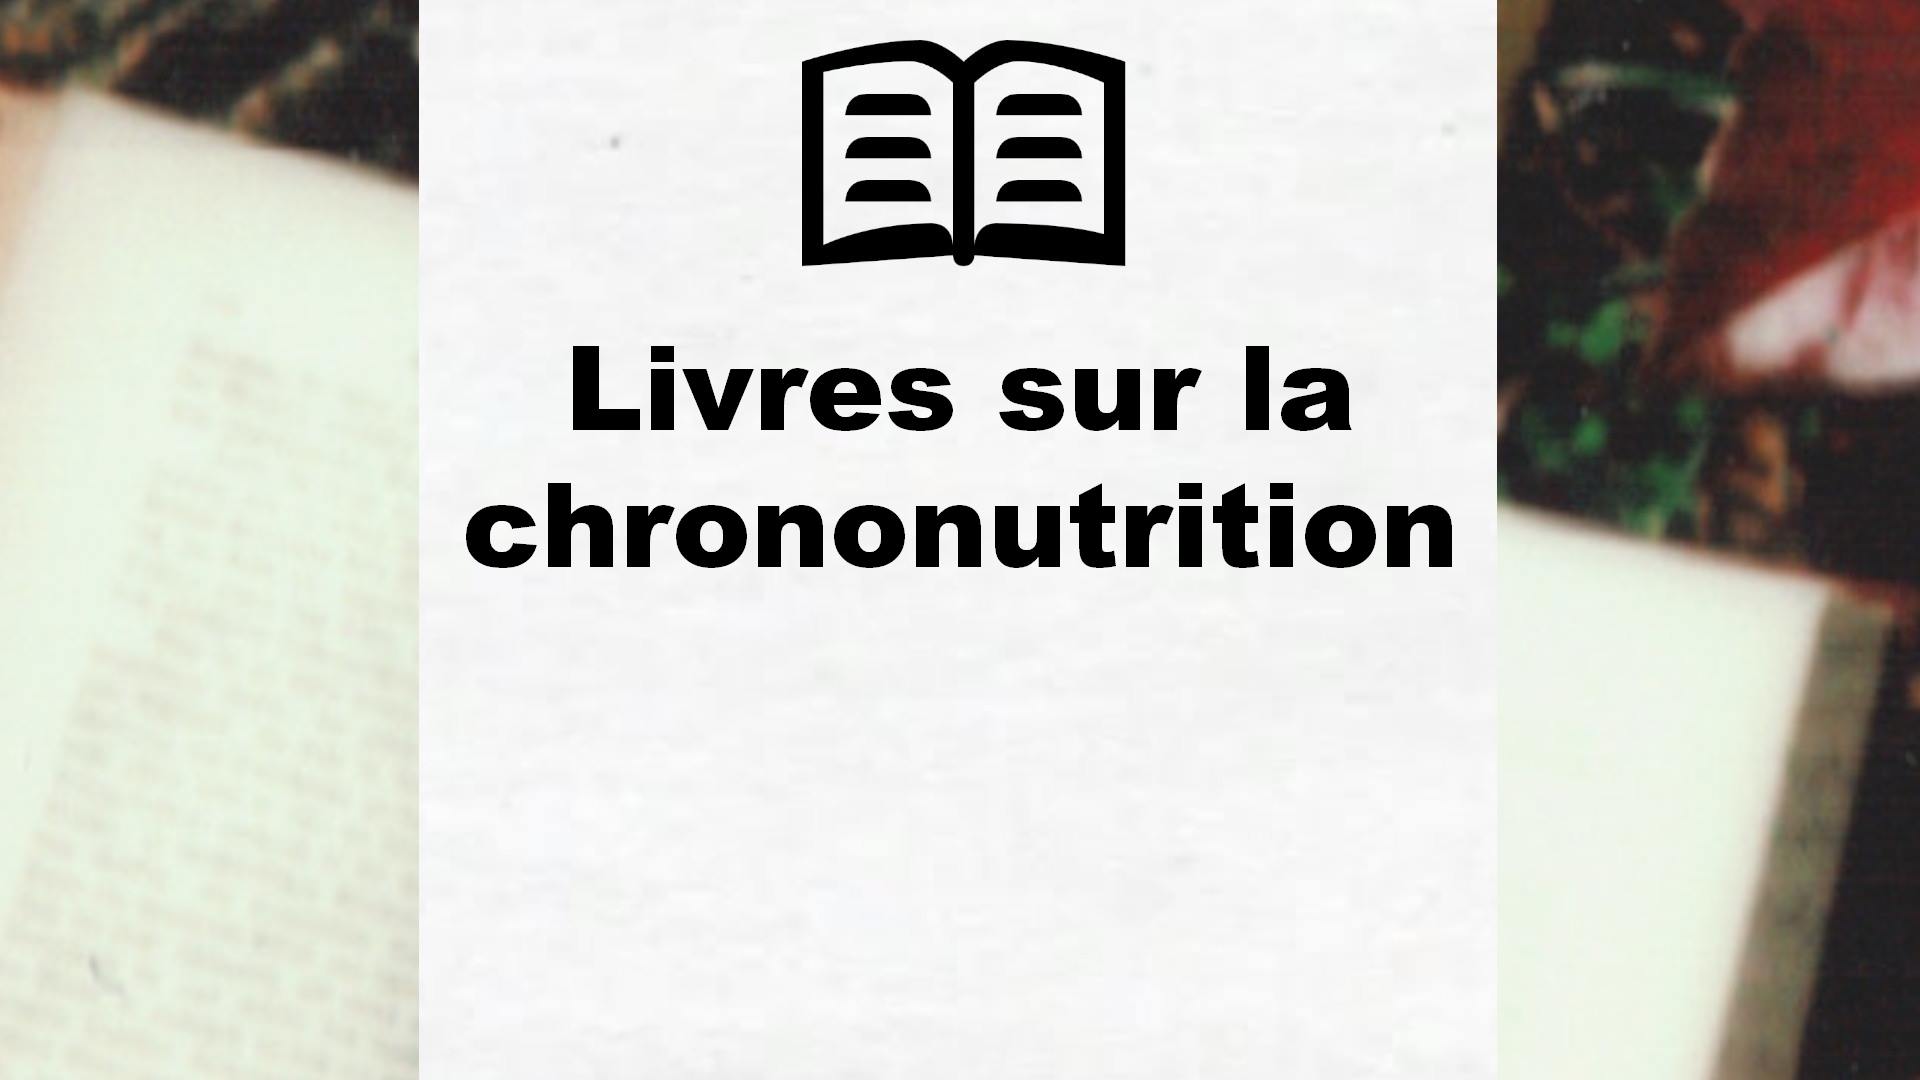 Livres sur la chrononutrition